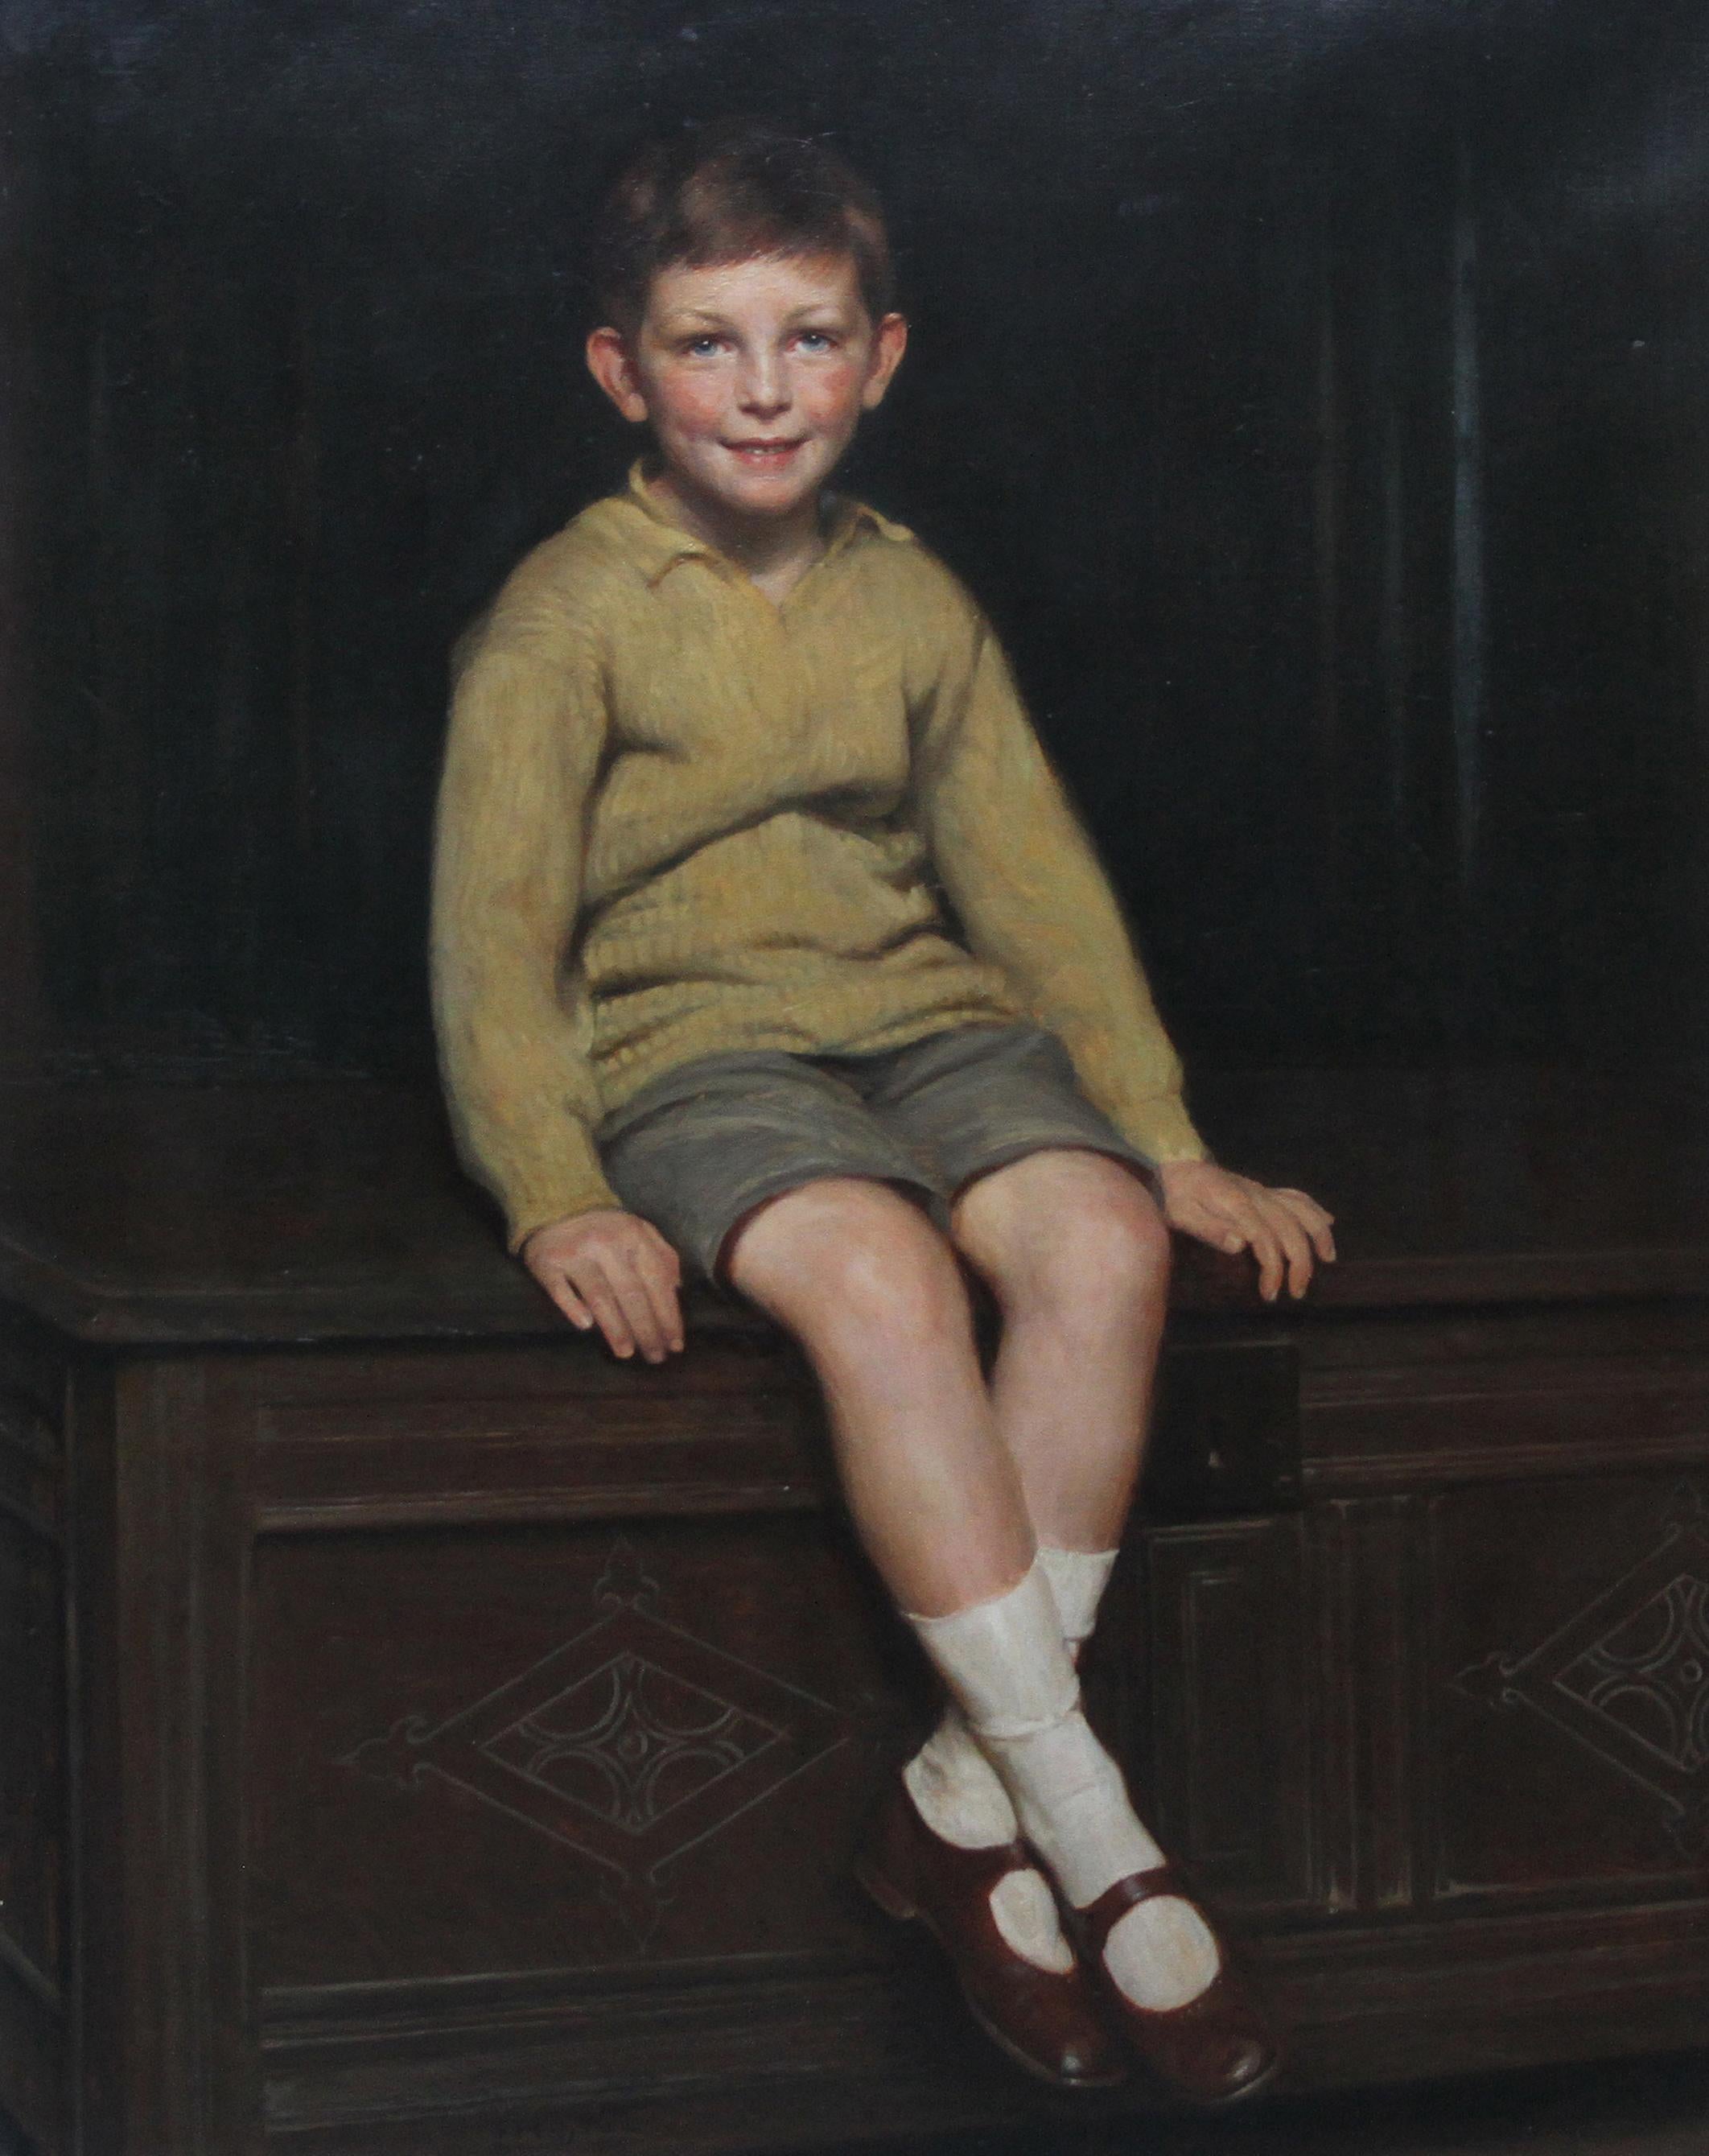 Portrait of Art Deco Boy - British 20's art realist child portrait oil painting  1